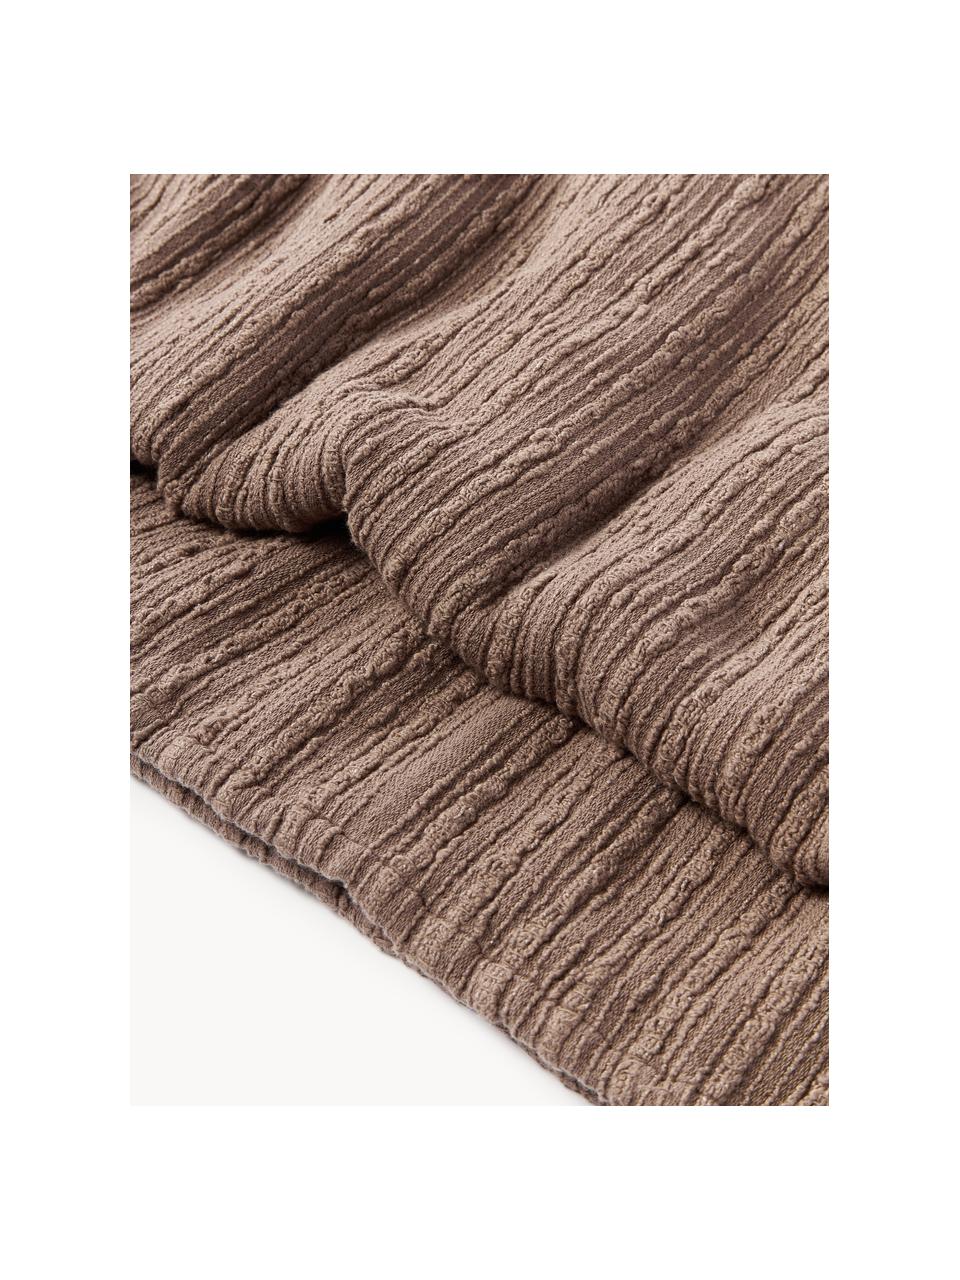 Couvre-lit en bouclette Thomassin, Tissu bouclette (95 % coton, 5 % polyester)

La bouclette est une matière qui se caractérise par sa texture aux courbes irrégulières. La surface caractéristique est créée par des boucles tissées de fils différents qui confèrent au tissu une structure unique. La structure bouclée a un effet à la fois isolant et moelleux, ce qui rend le tissu particulièrement douillet

Le matériau est certifié STANDARD 100 OEKO-TEX®, 4265CIT, CITEVE, Brun, larg. 230 x long. 250 cm (pour lits jusqu'à 180 x 200 cm)